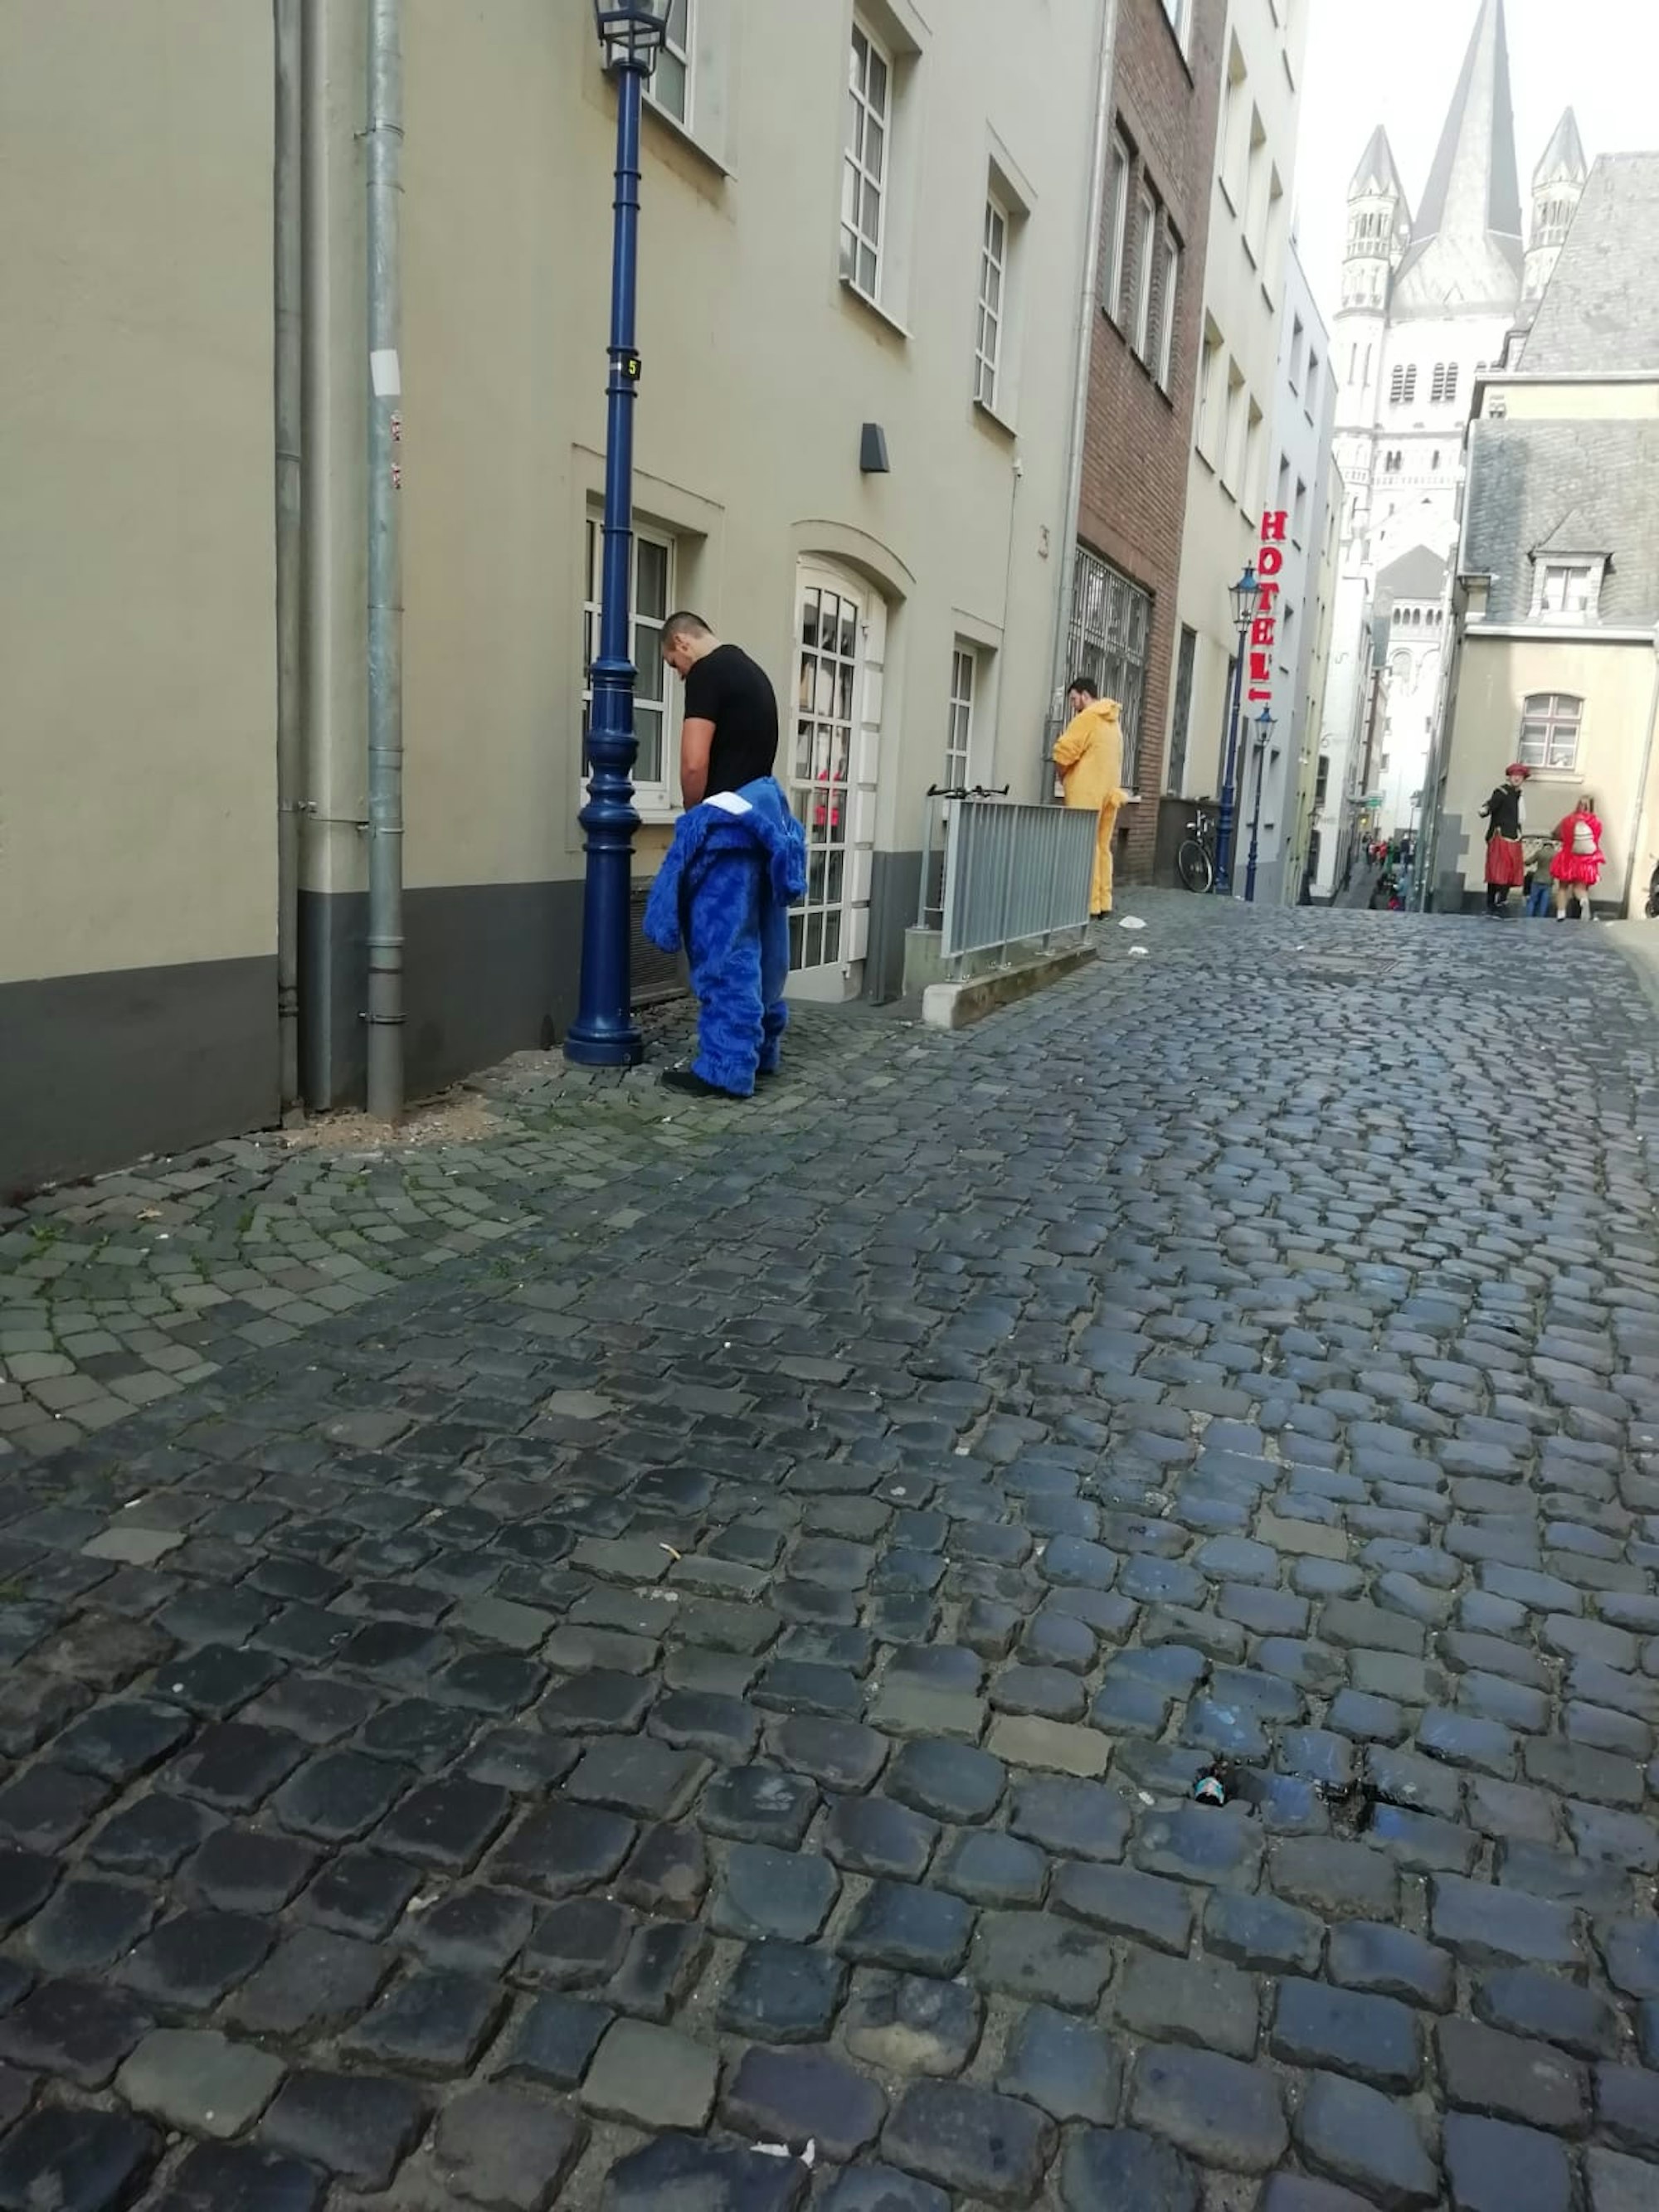 Die Gassen in der Altstadt werden an Karneval häufig als Toiletten missbraucht